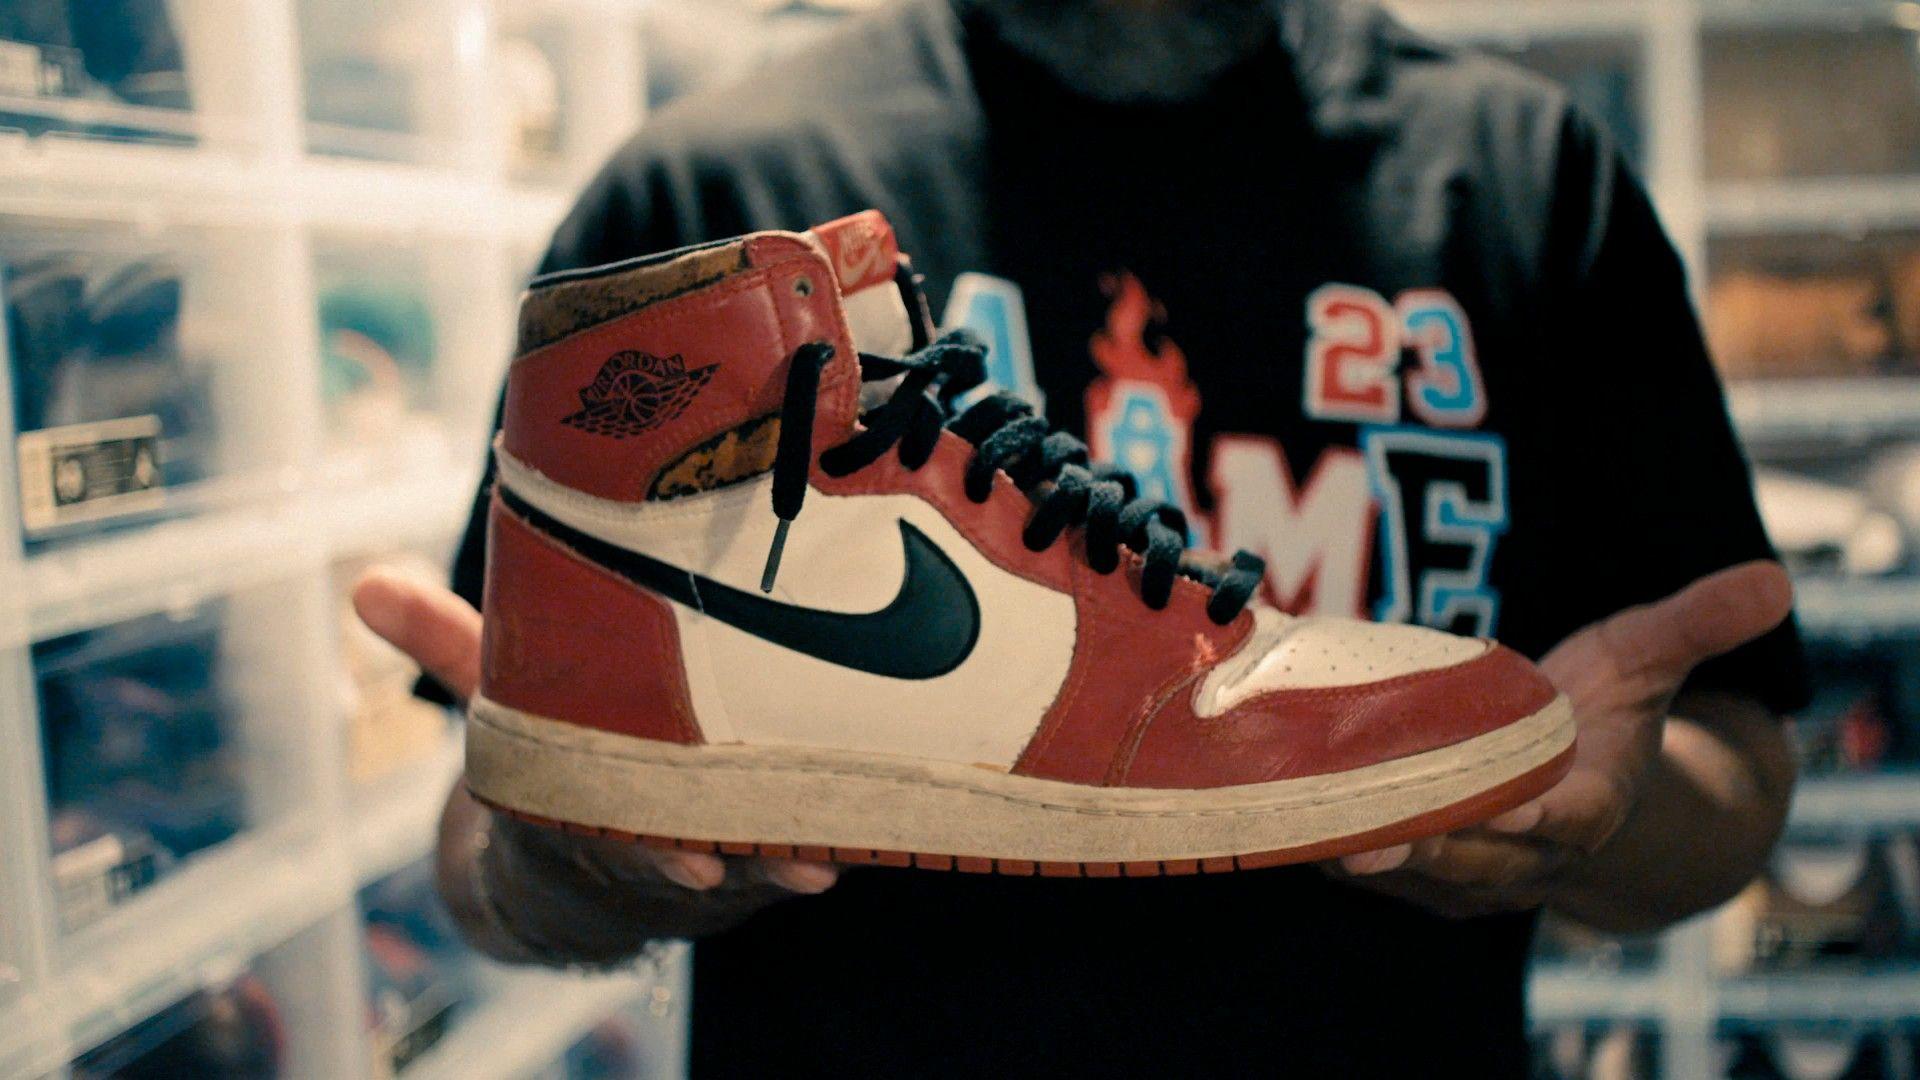 Air Jordan - Die Legende eines Schuhs